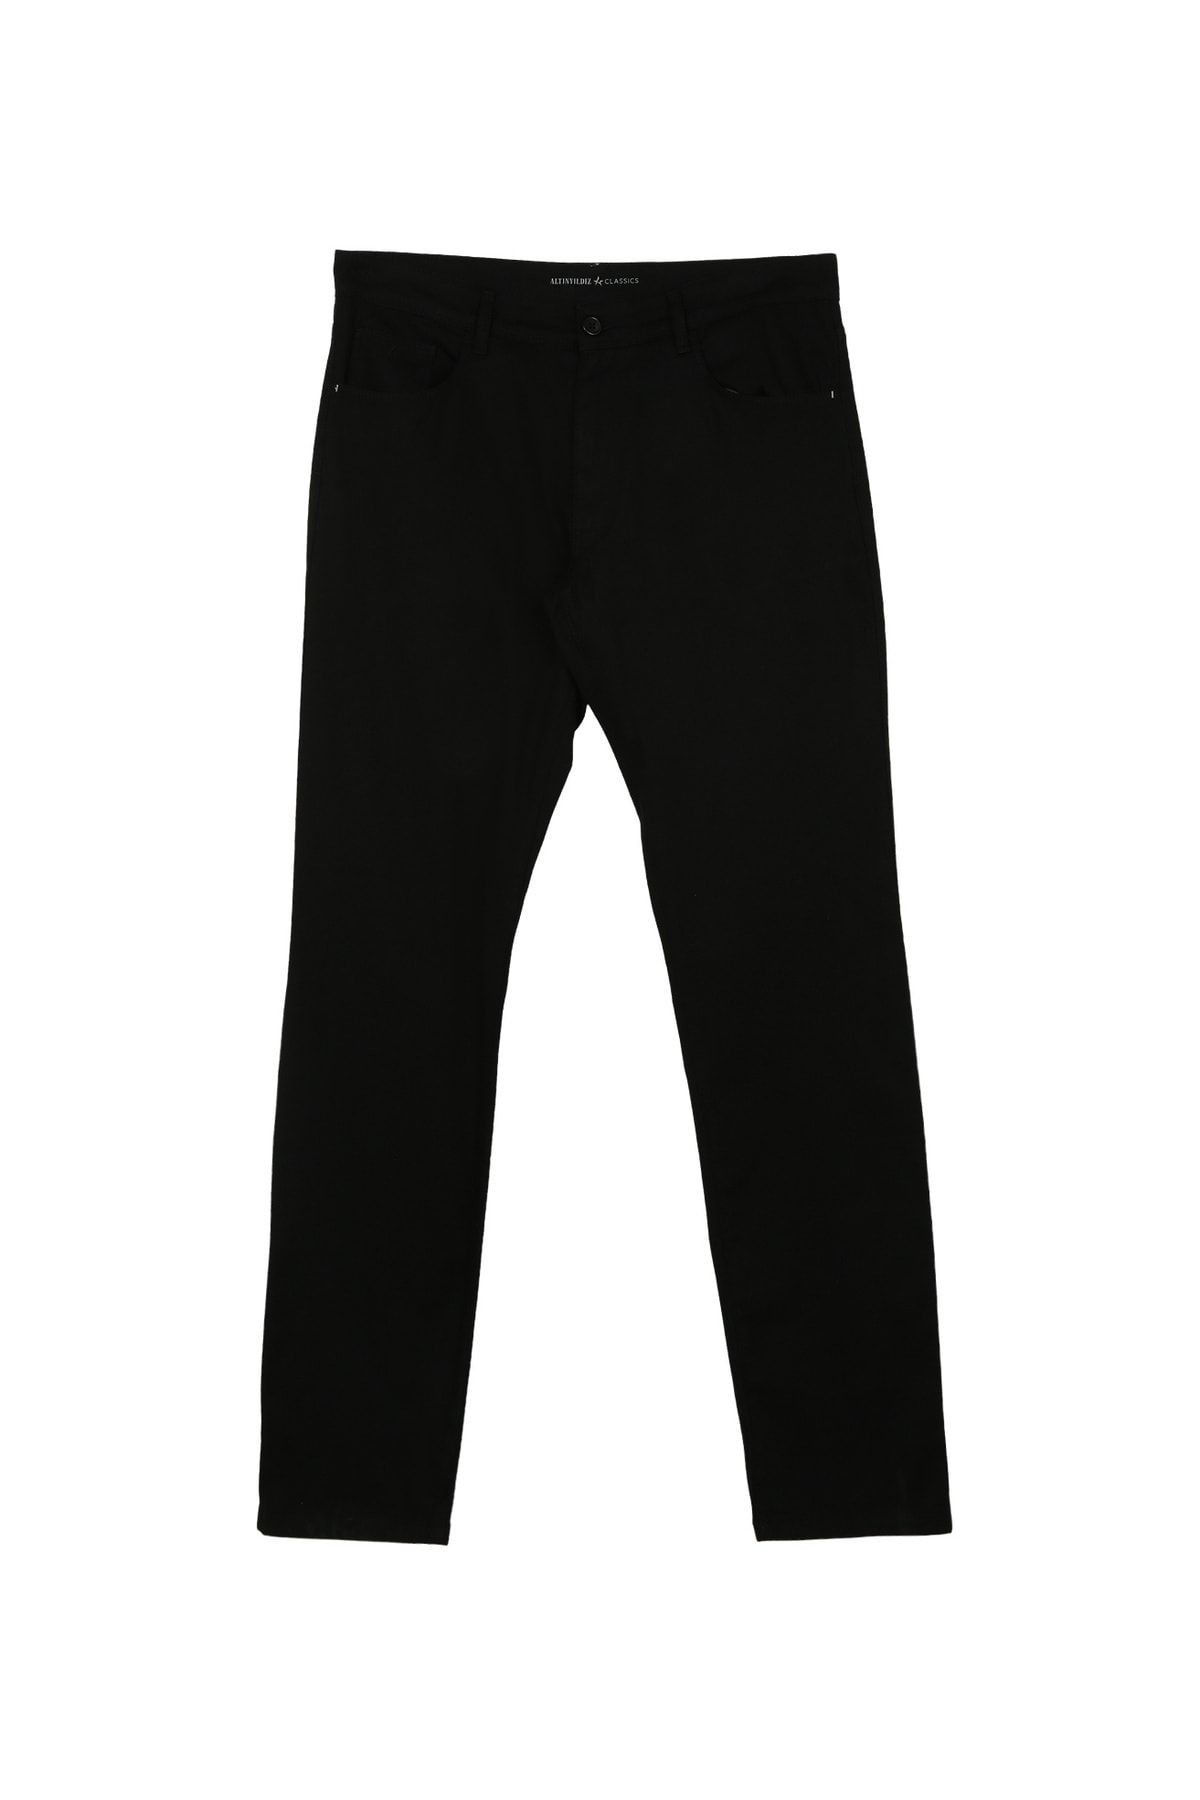 Altınyıldız Classics Altınyıldız Classics Normal Bel Boru Paça Comfort Fit Siyah Erkek Pantolon 4A0123200093